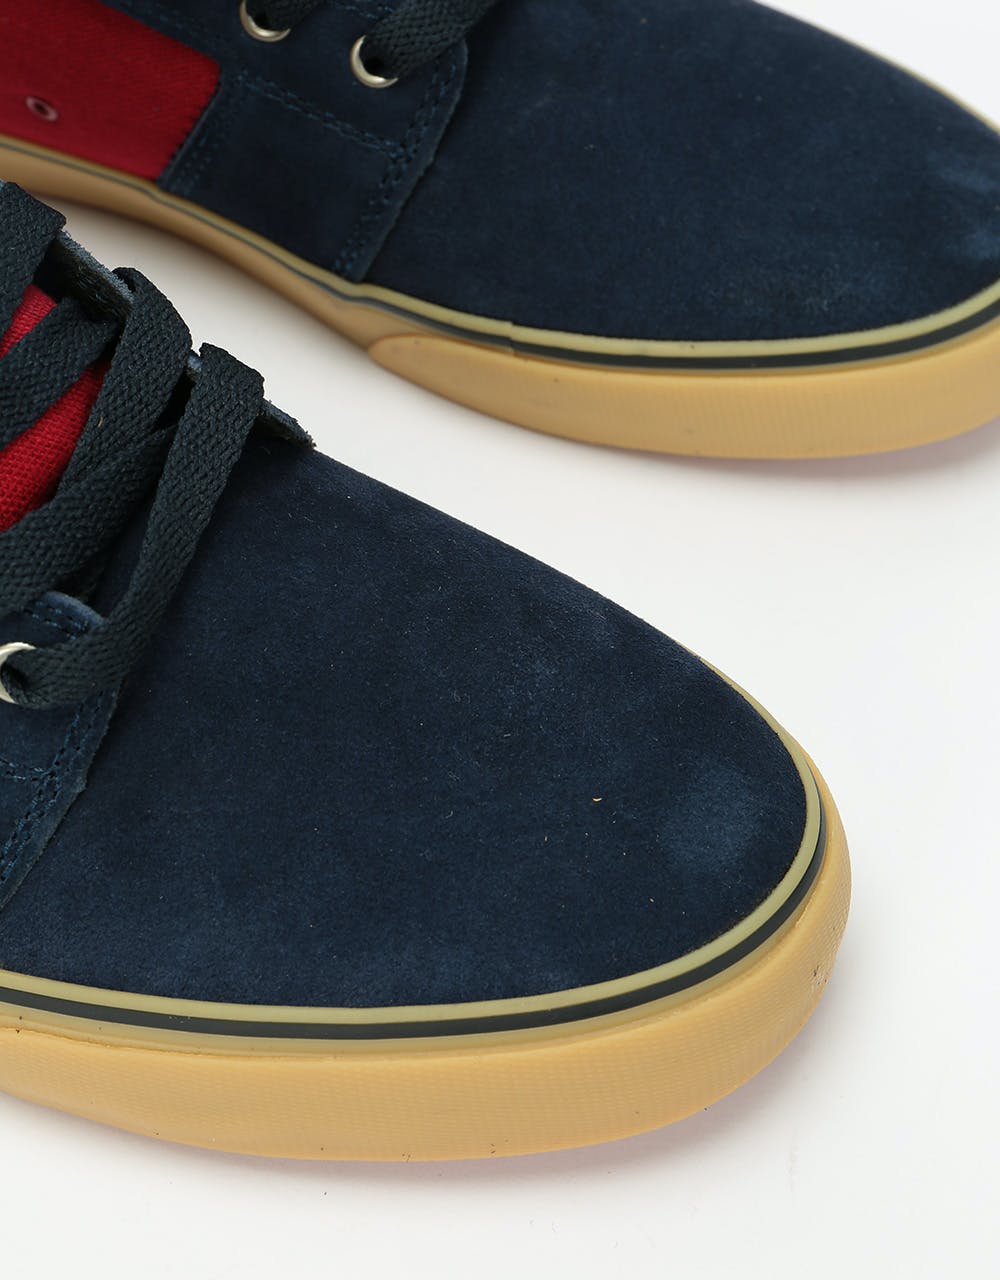 Etnies Barge LS Skate Shoes - Navy/Red/Gum